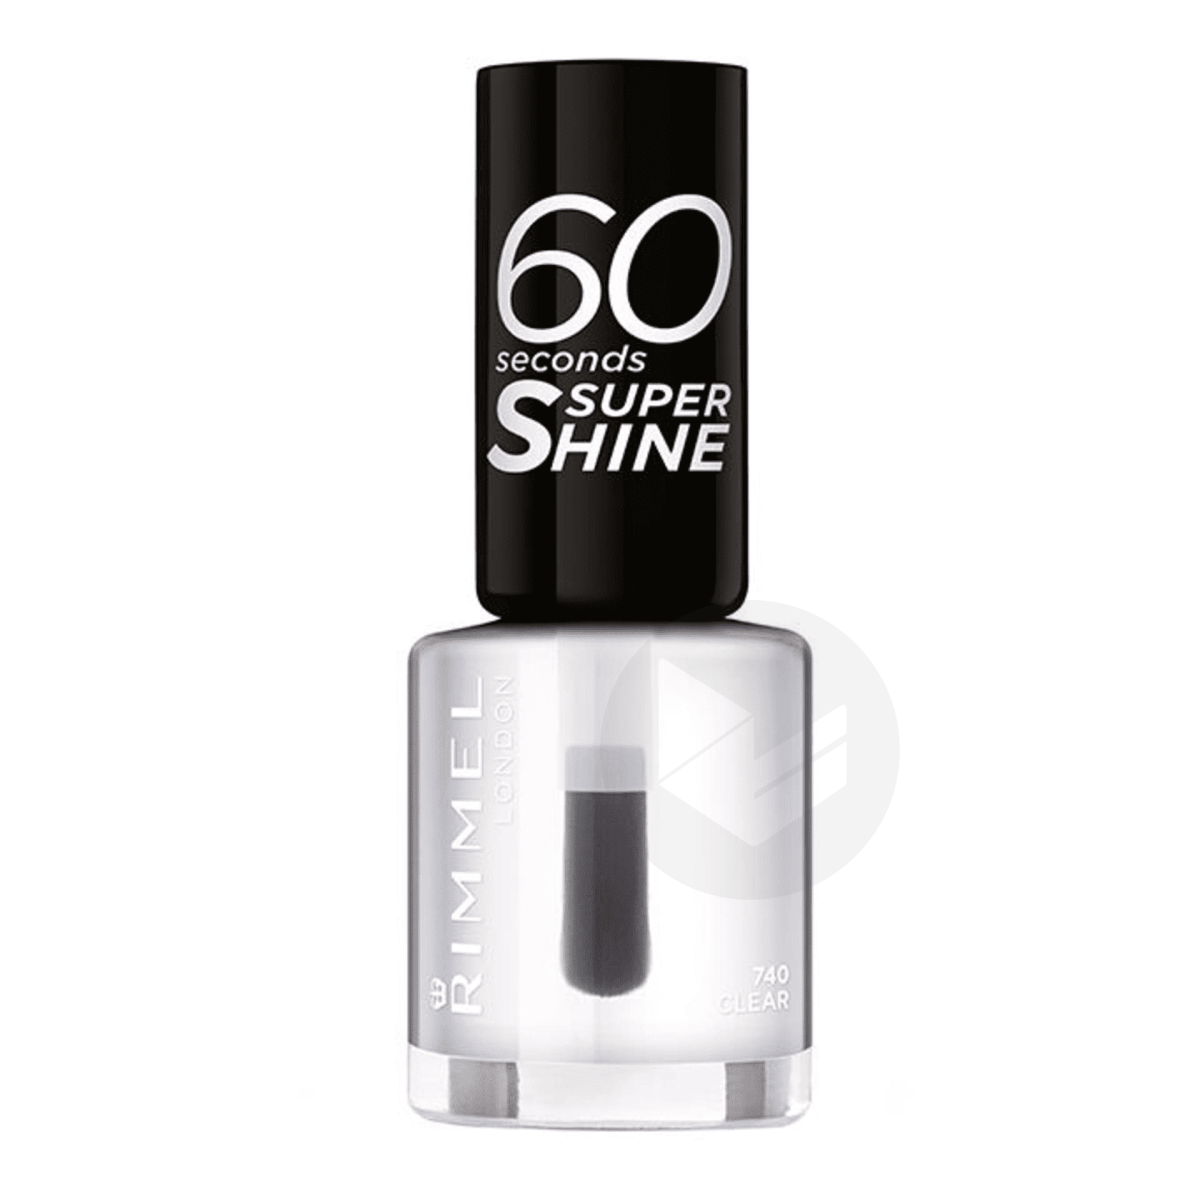 Vernis à ongles 60 Seconds Super Shine 740 Clear 8ml